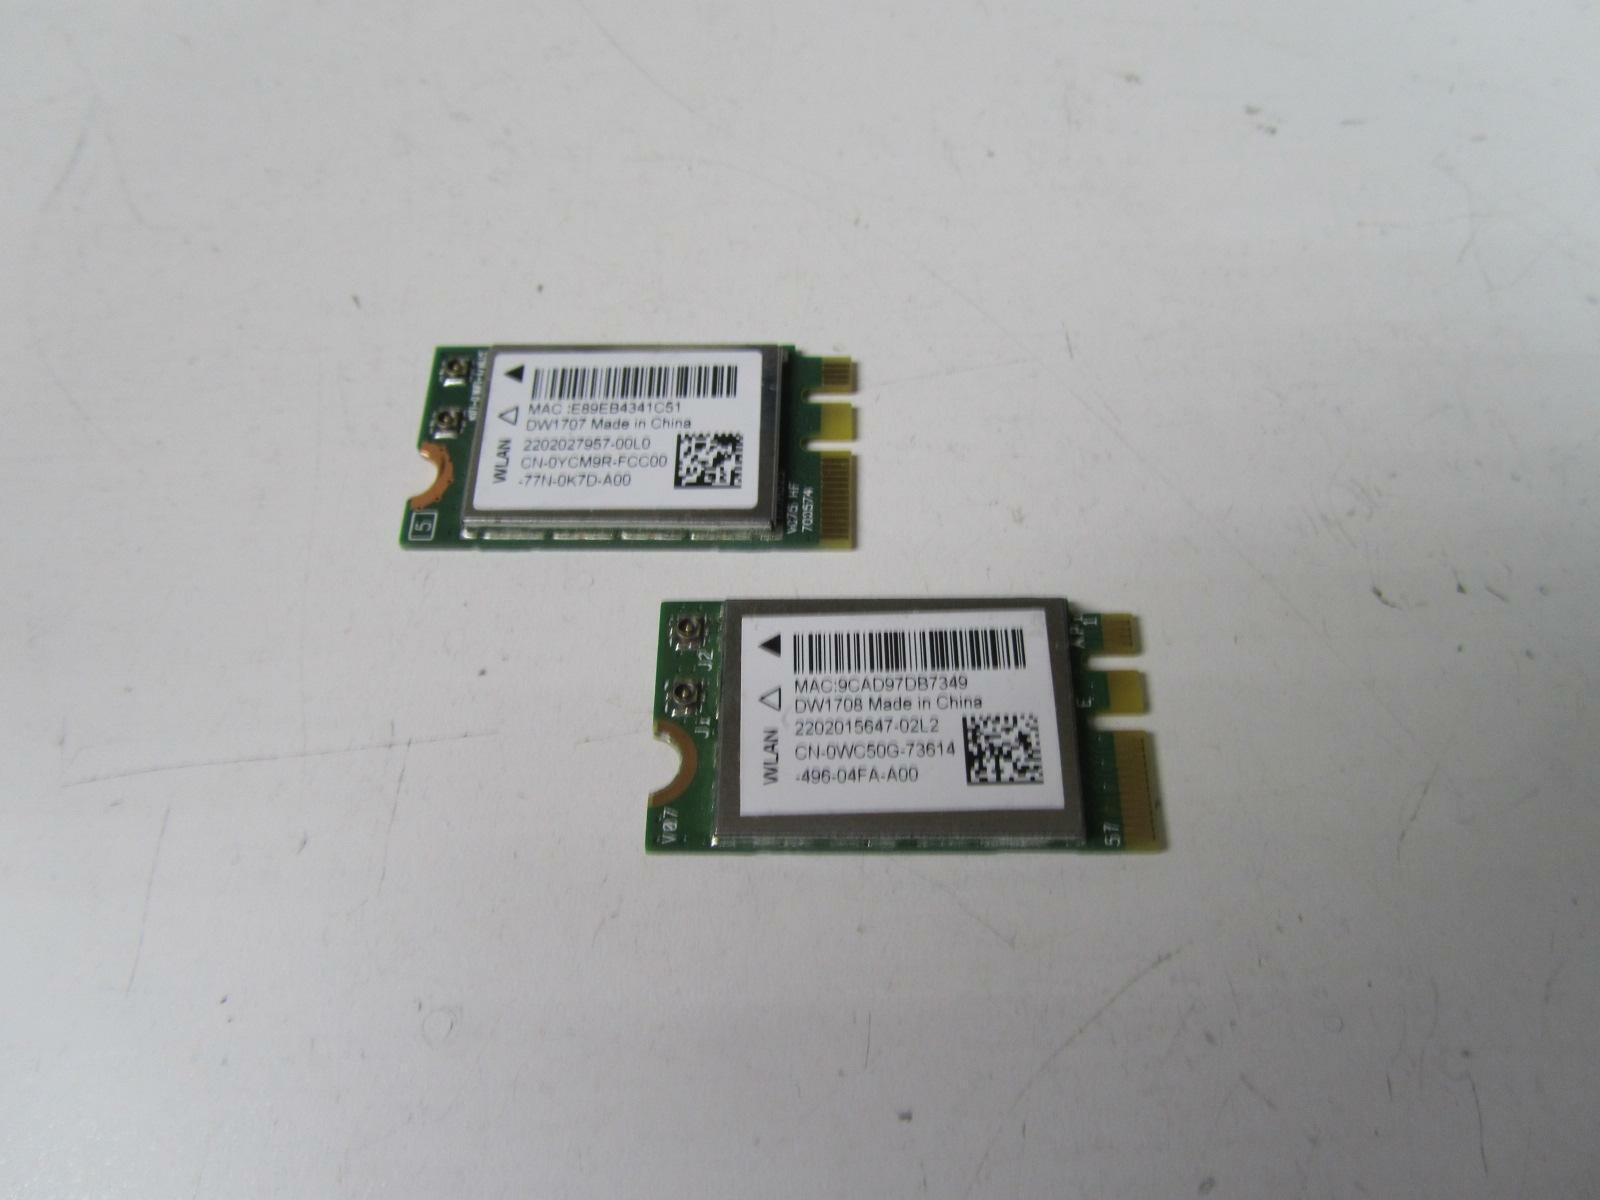 Pair of Genuine Dell Wireless Bluetooth WiFi WLAN Card QCNFA335 - 0YCM9R